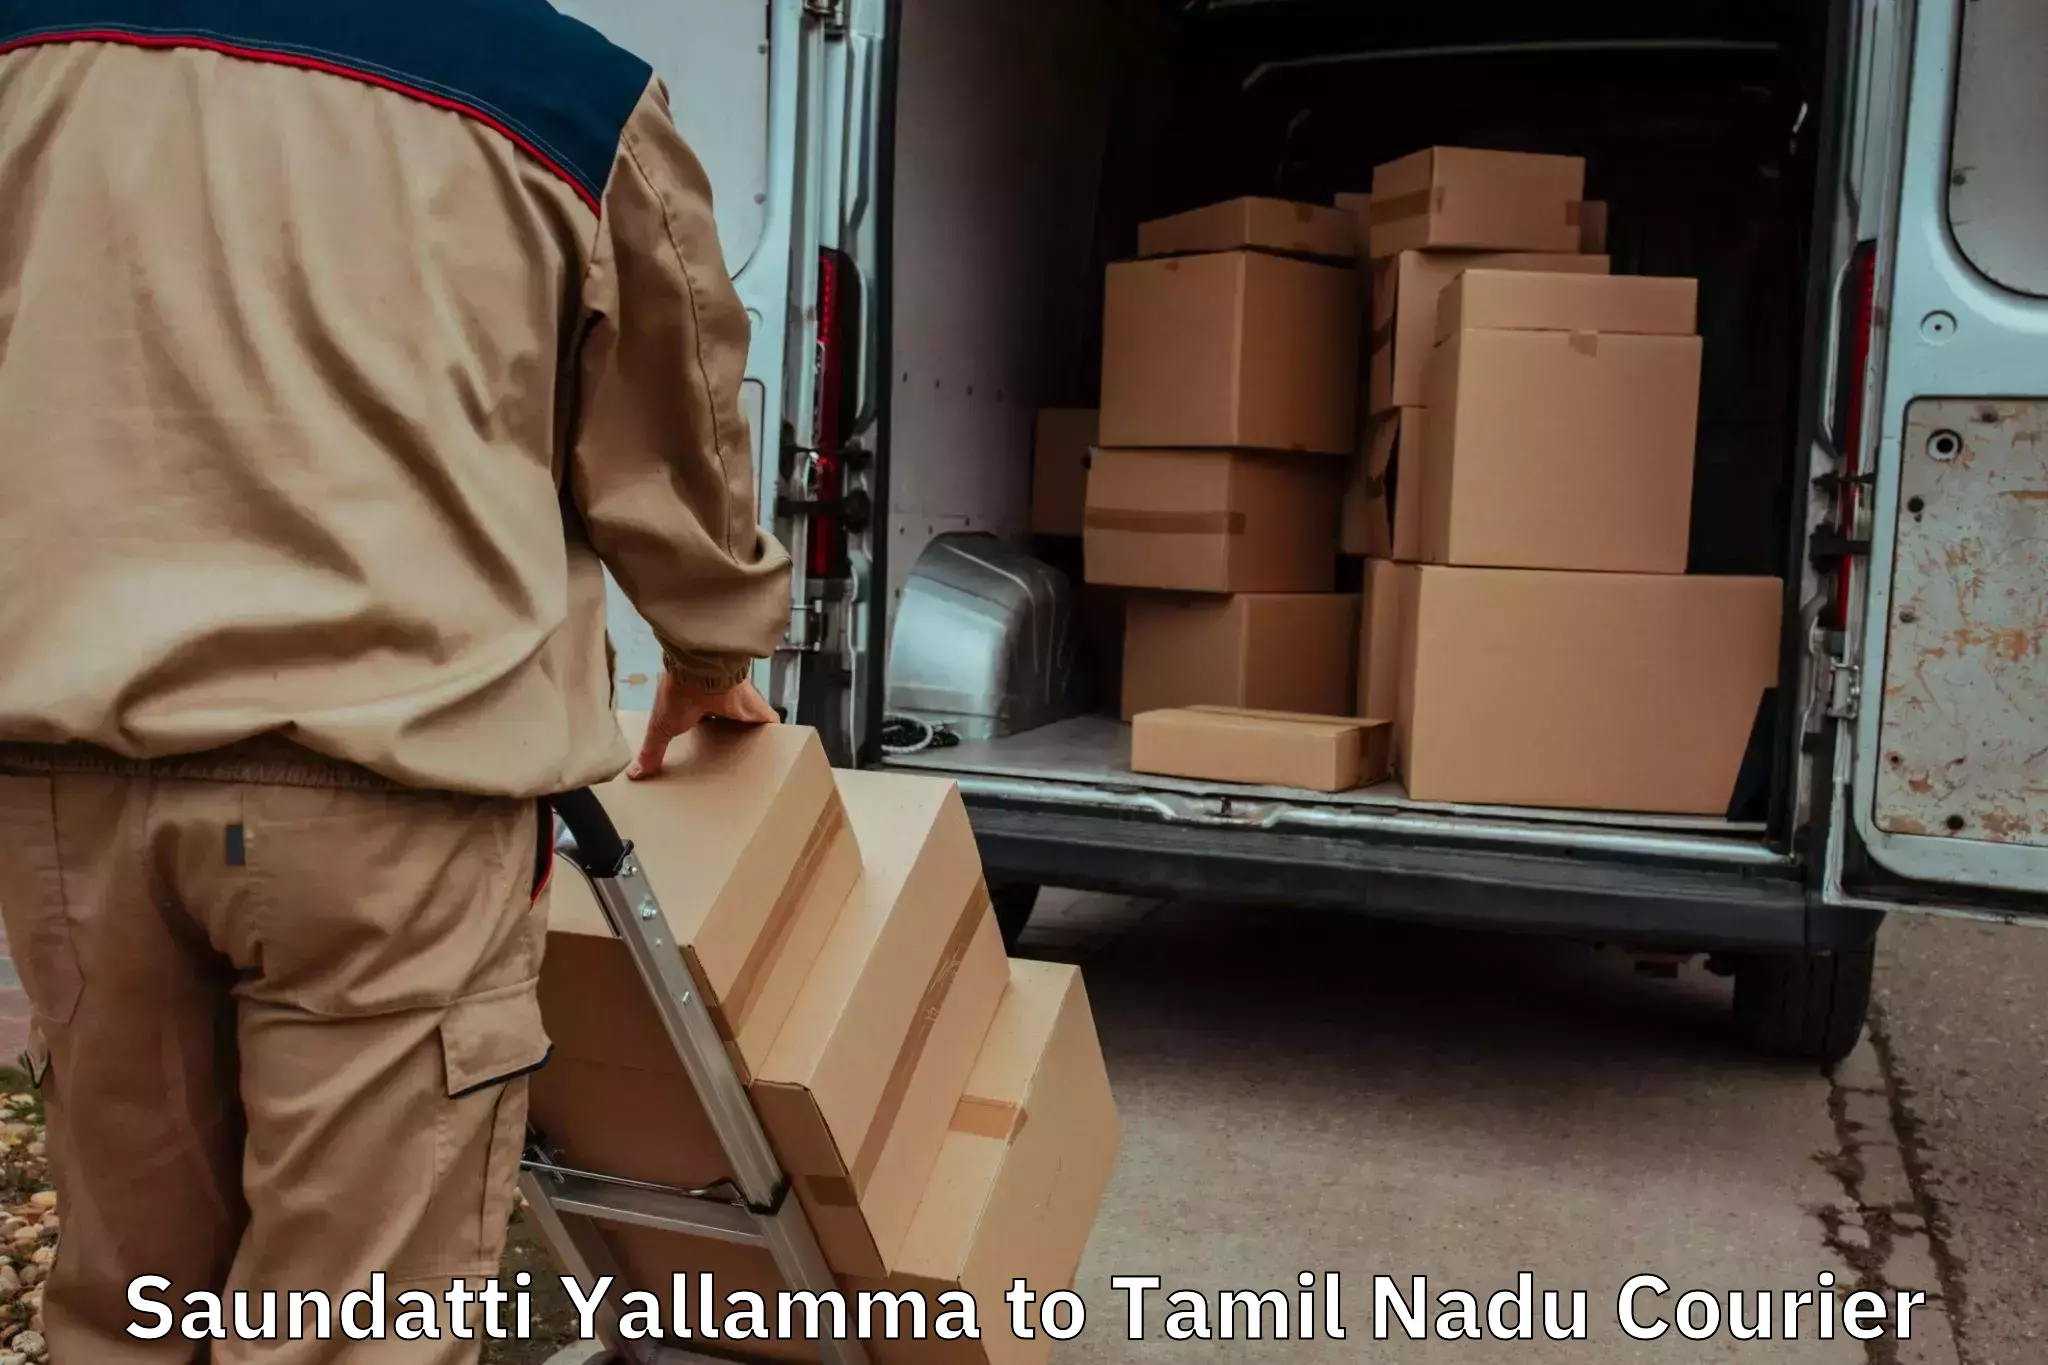 Furniture moving assistance Saundatti Yallamma to Tamil Nadu